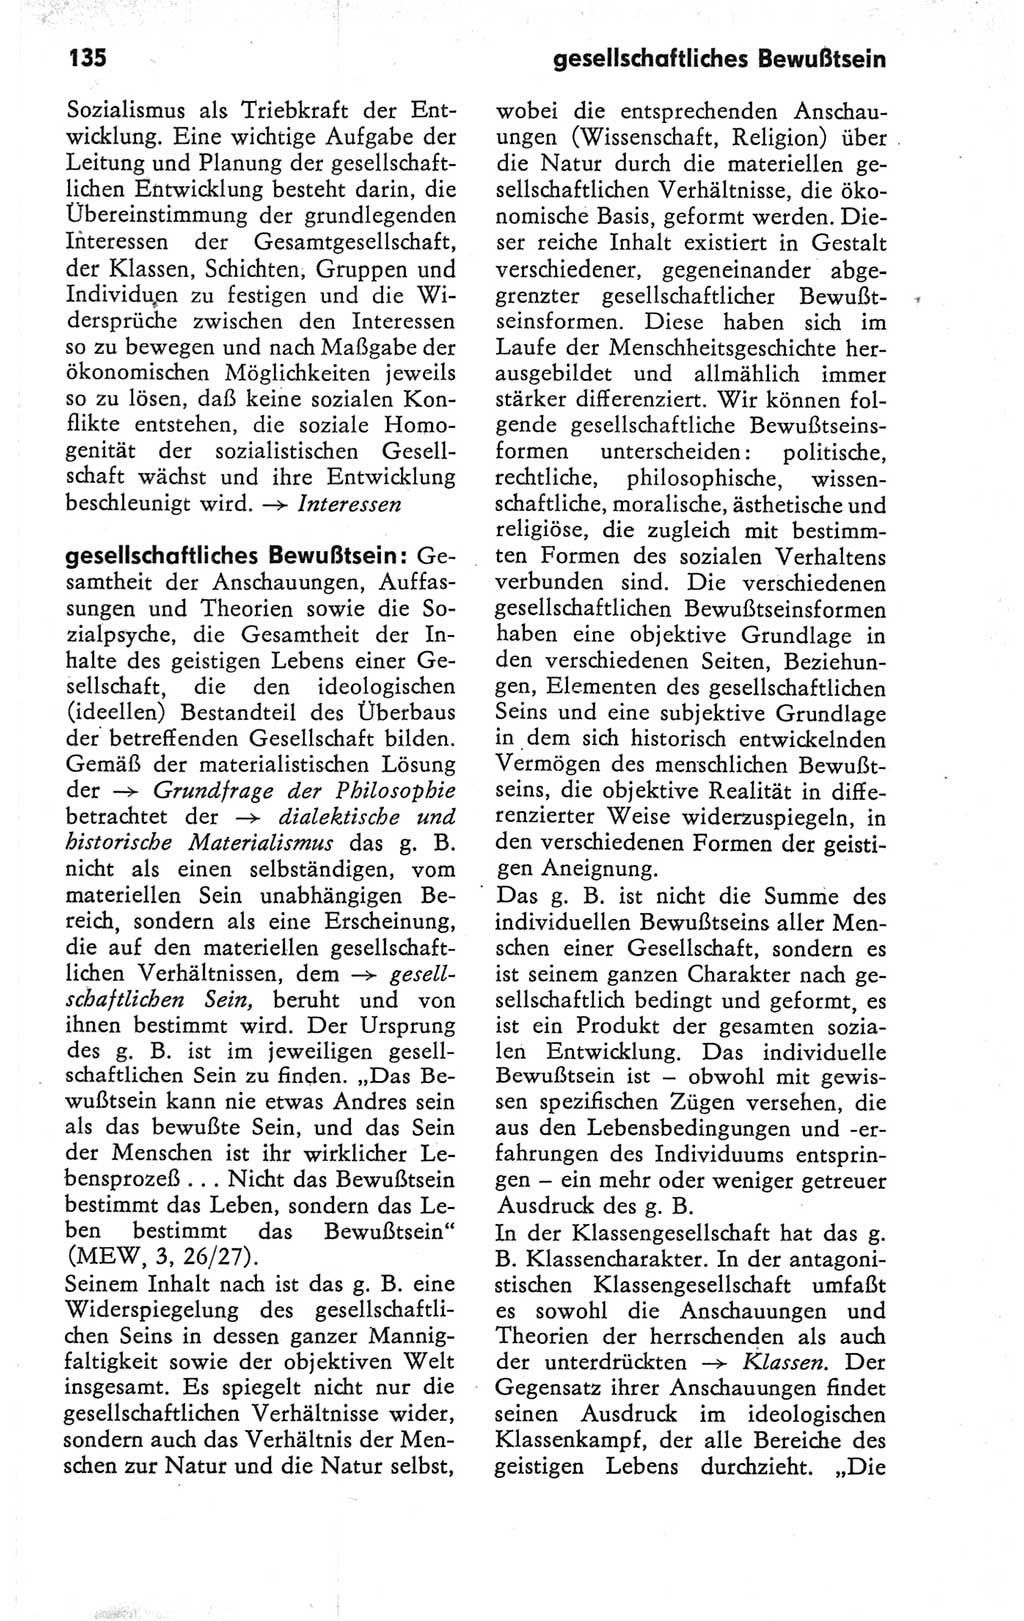 Kleines Wörterbuch der marxistisch-leninistischen Philosophie [Deutsche Demokratische Republik (DDR)] 1979, Seite 135 (Kl. Wb. ML Phil. DDR 1979, S. 135)